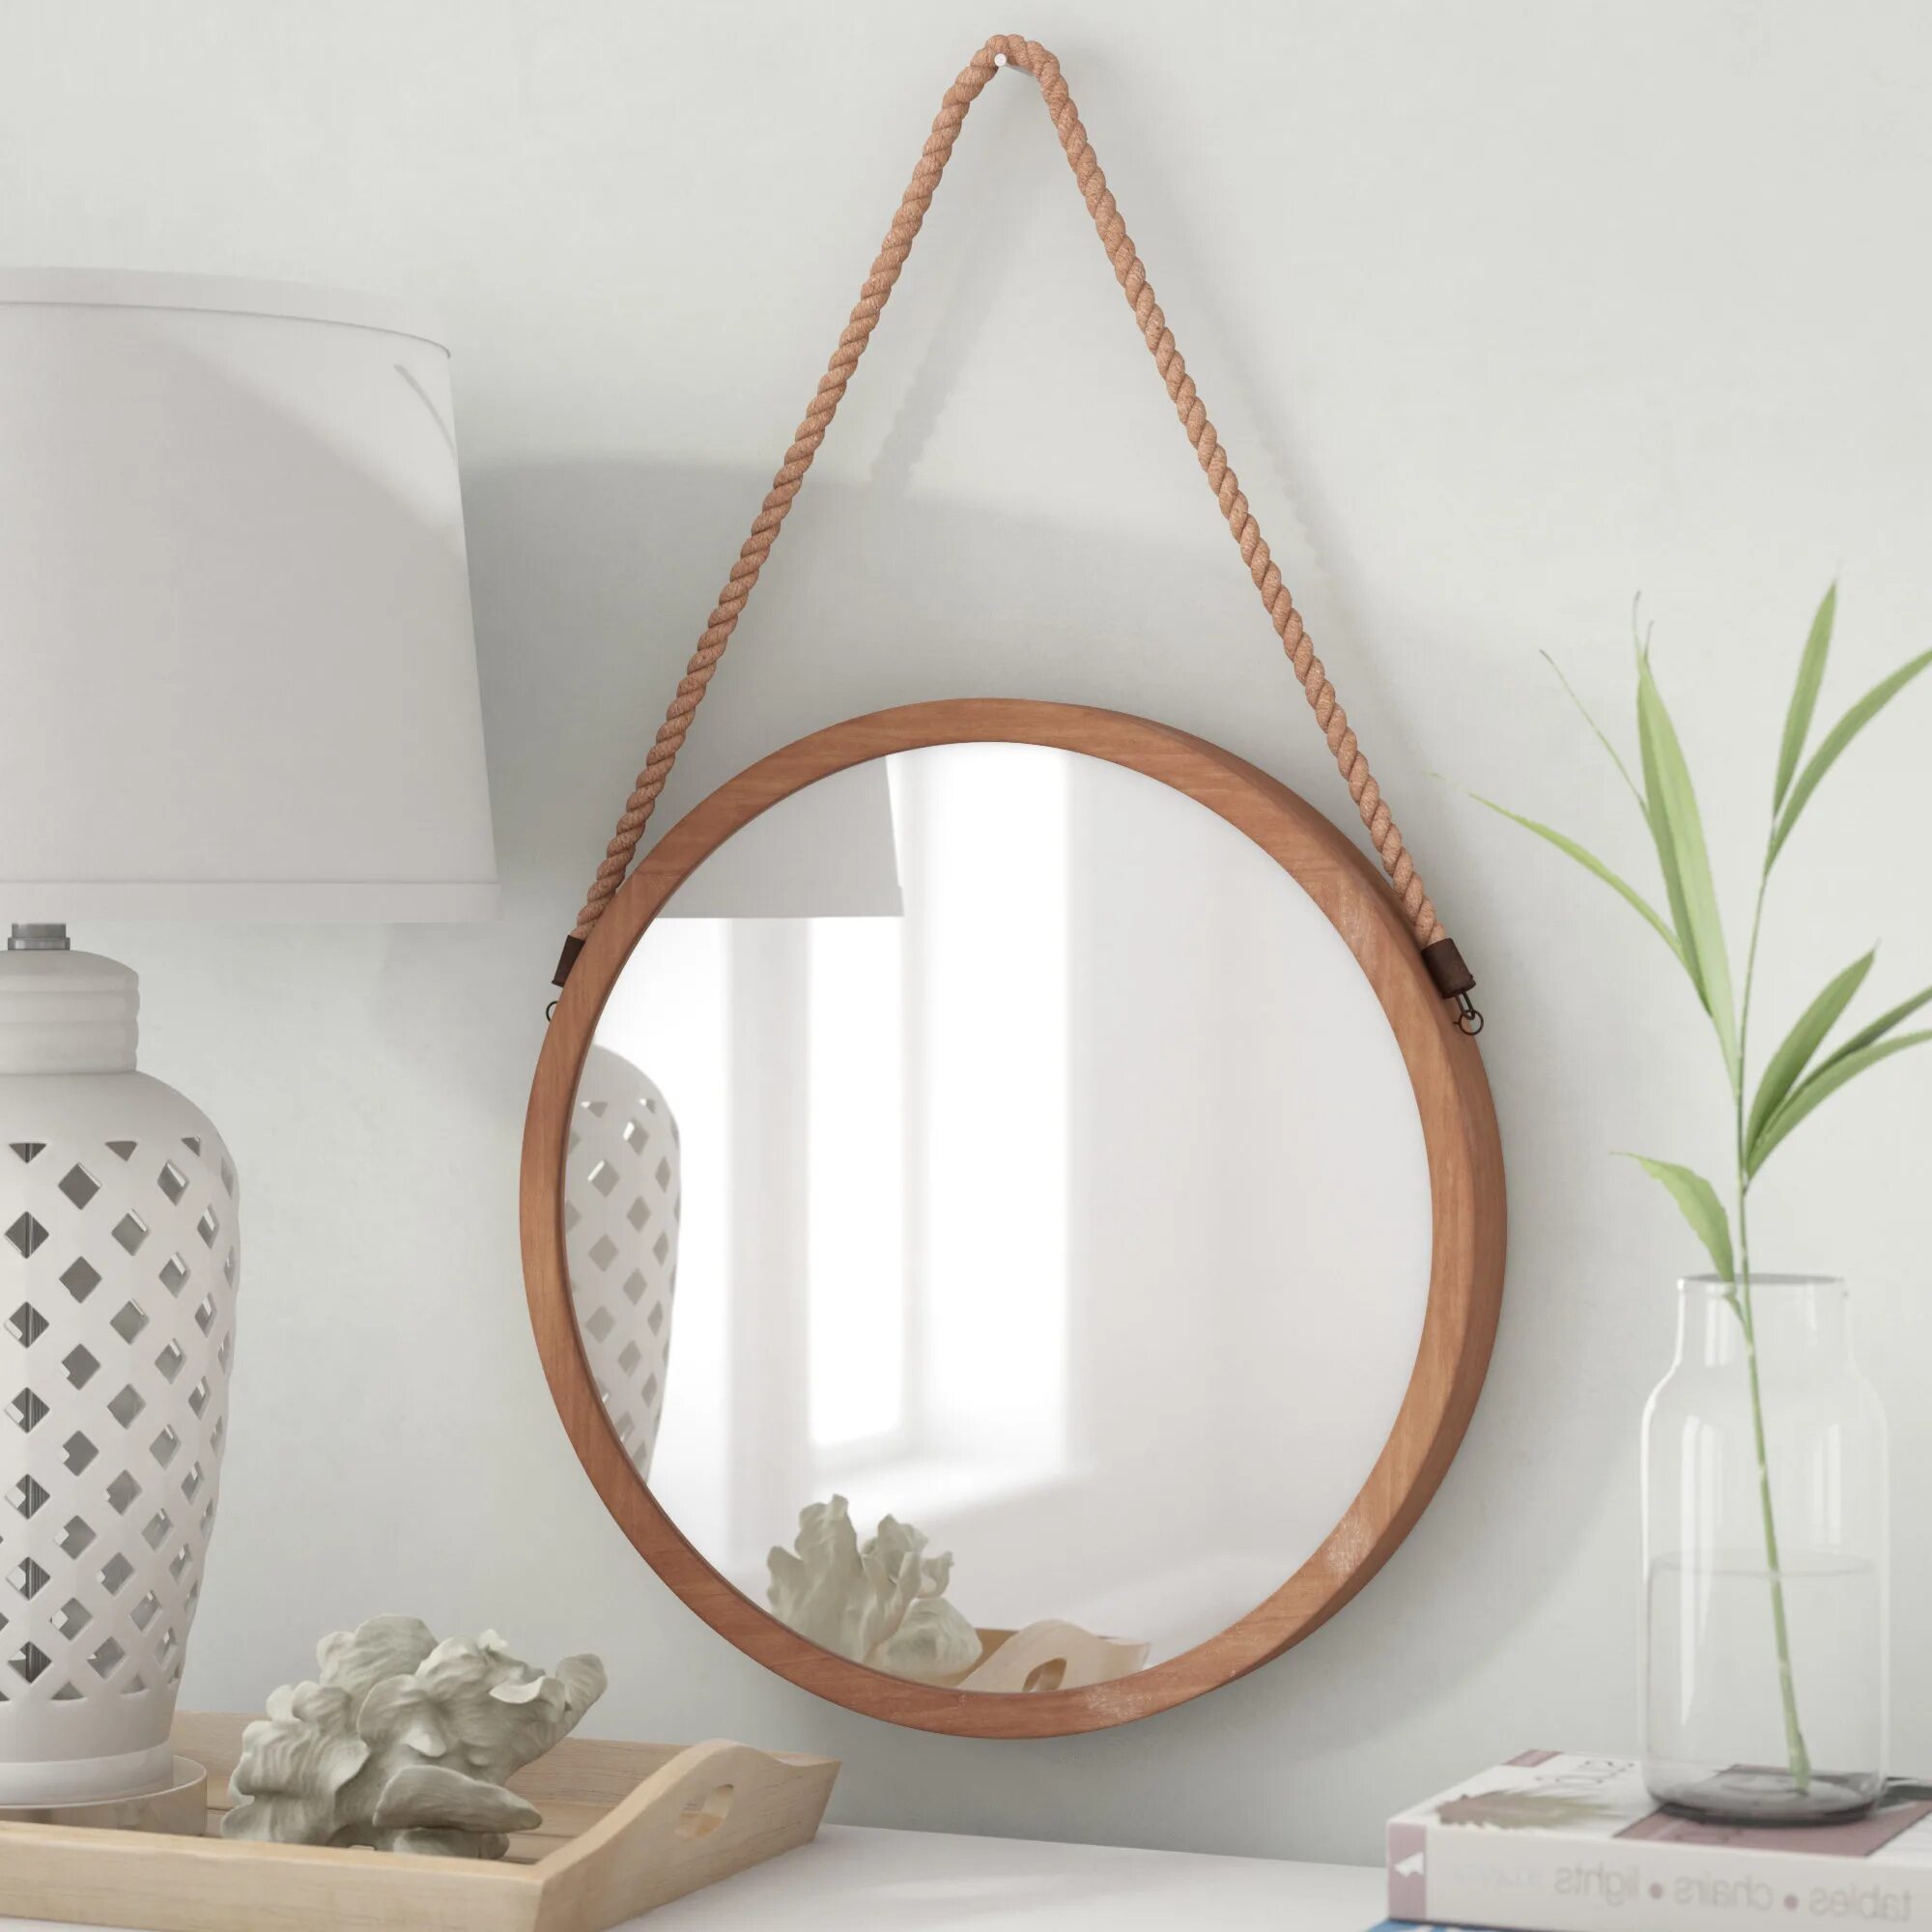 Подвесное зеркало для ванной. Зеркало в деревянной раме икеа. Круглое зеркало в ванную. Зеркало круглое подвесное. Деревянное зеркало в ванную.